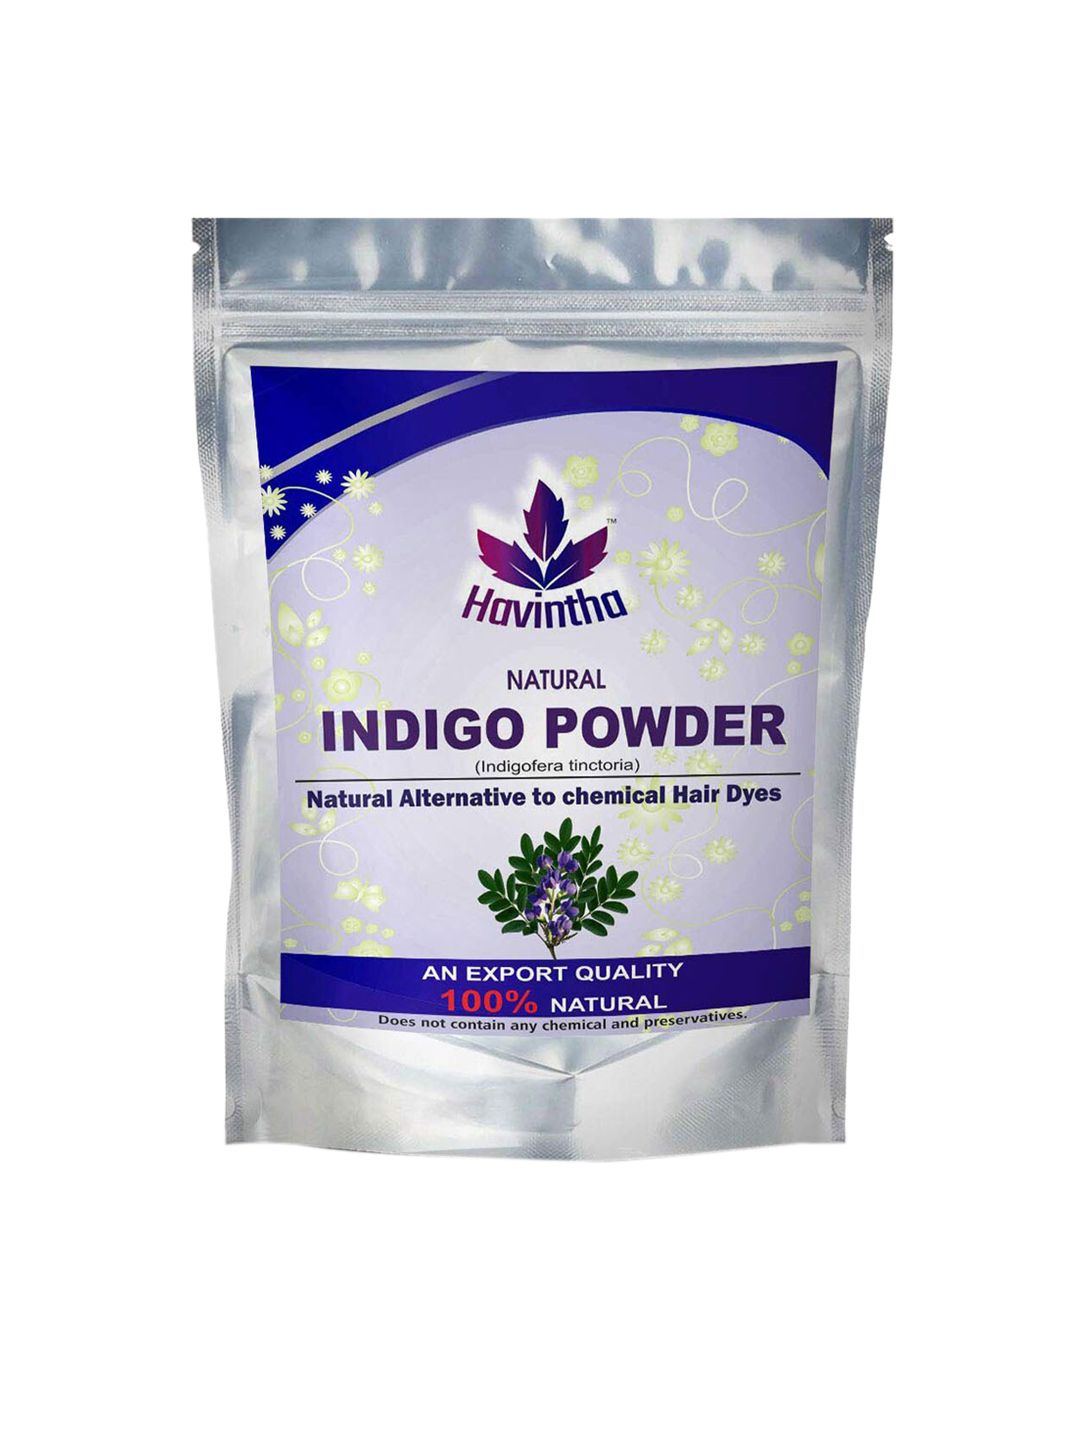 Havintha Black Indigo Powder for Hair & Beard Colour (Indigofera Tinctoria) Price in India